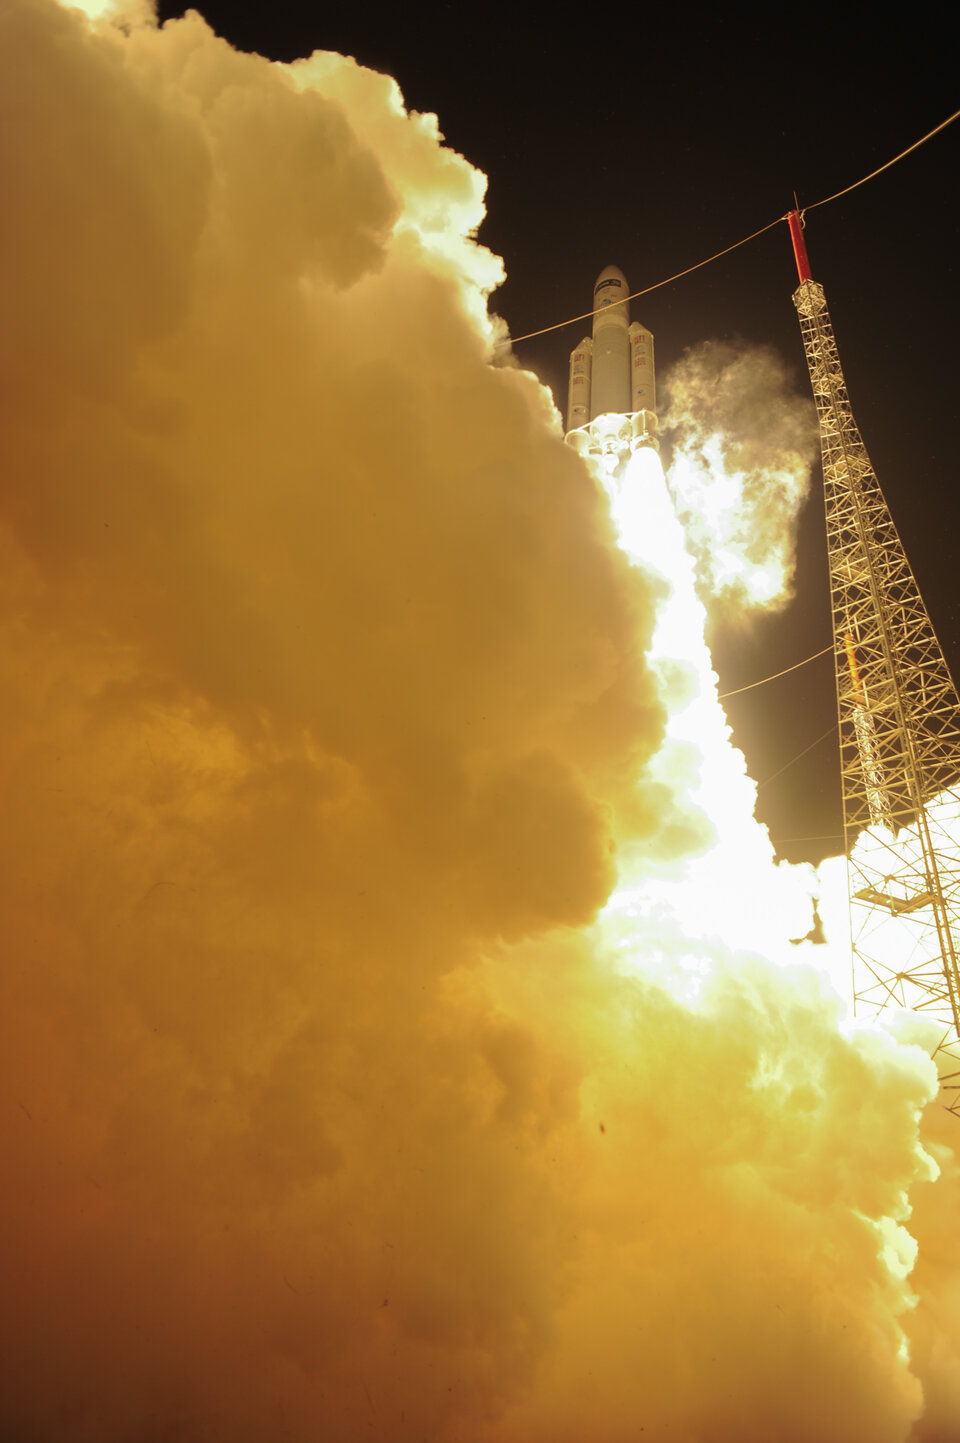 De ATV 5 Georges Lemaître werd gelanceerd met een Ariane 5-raket vanuit Kourou in Frans Guyana